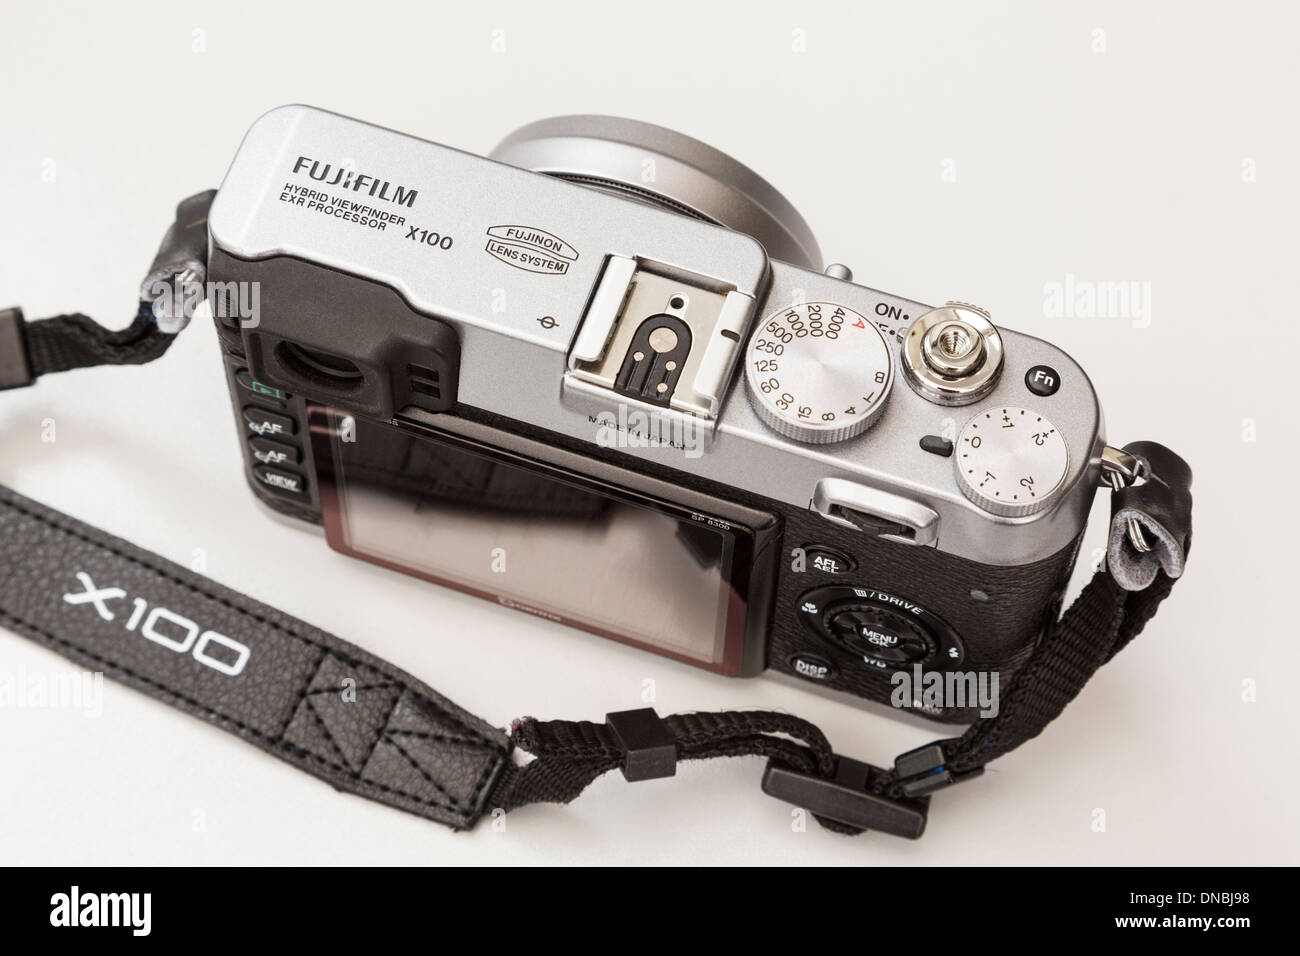 Fujifilm X100 tradizionale stile retrò fotocamera digitale compatta piastra superiore con quadranti Foto Stock